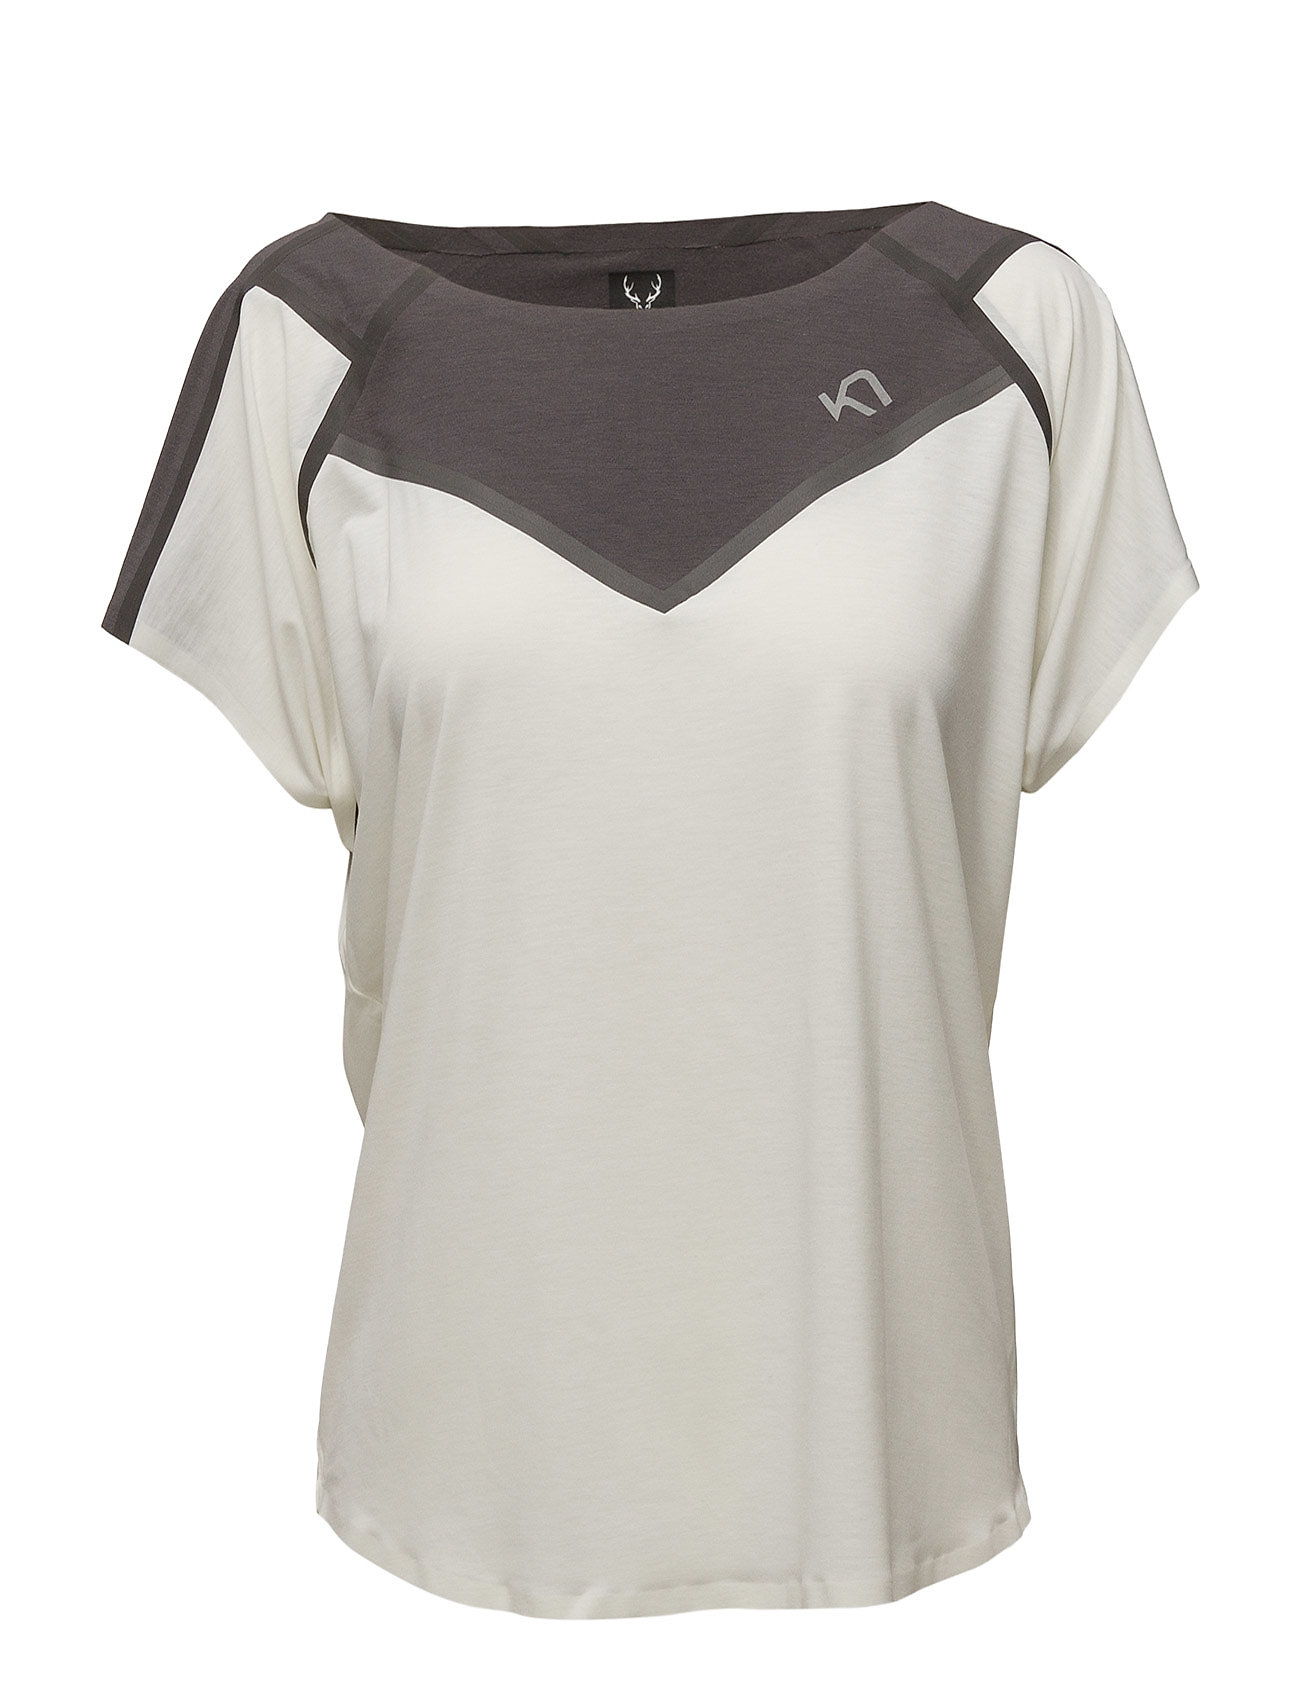 Silja Tee T-shirts & Tops Short-sleeved Valkoinen Kari Traa